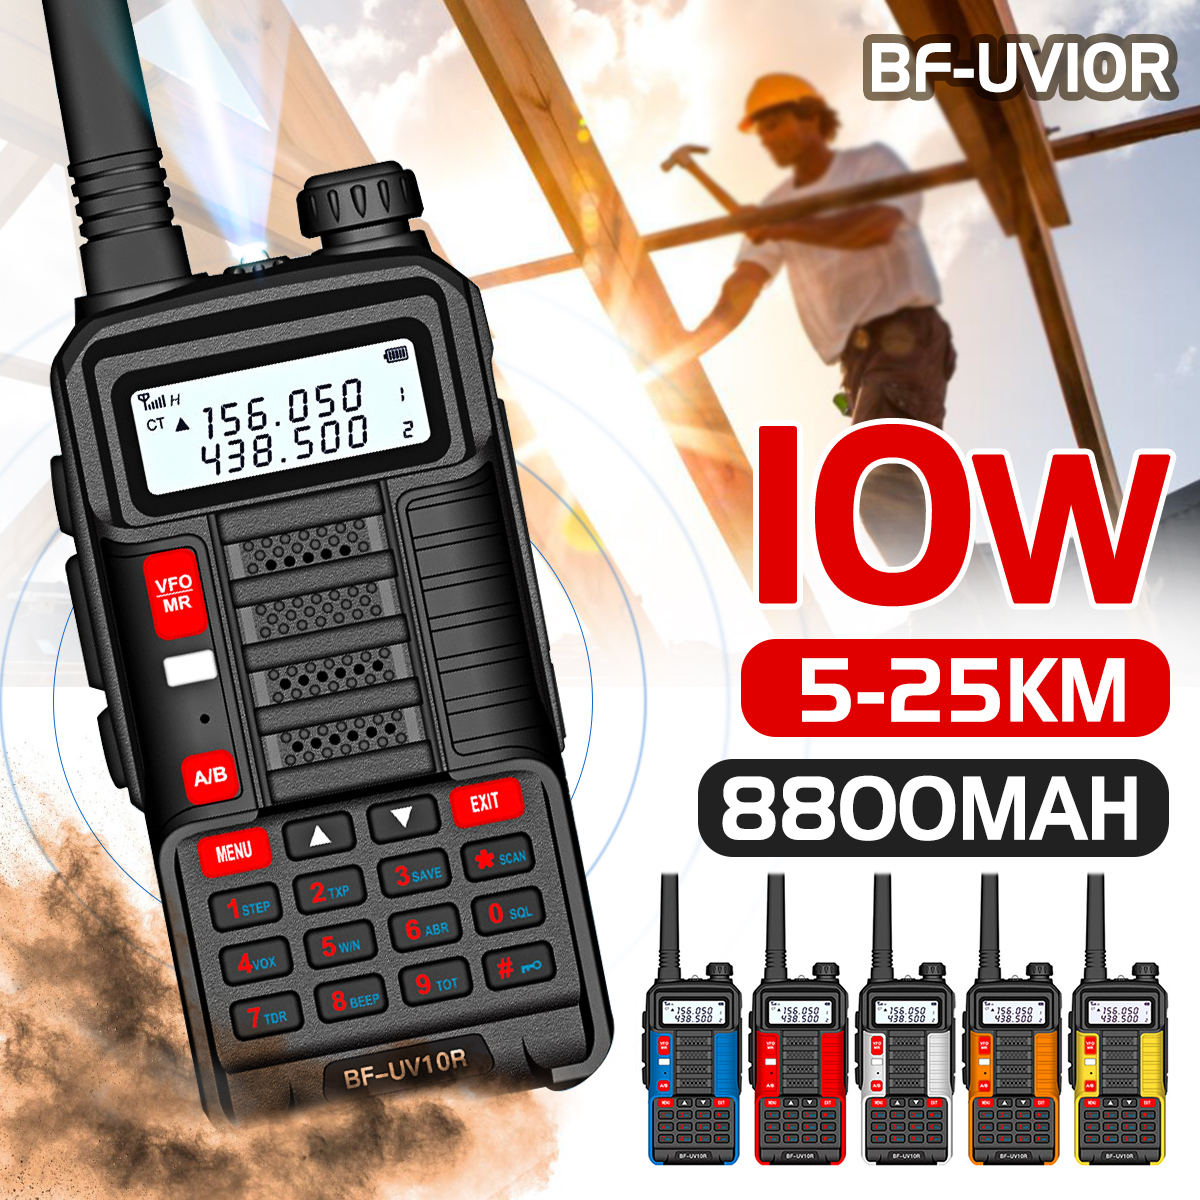 BAOFENG-UV10R-10W-8800mAh-Walkie-Talkie-5-20KM-High-Power-Long-Range-Waterproof-Dustproof-Two-Way-Ra-1837076-1